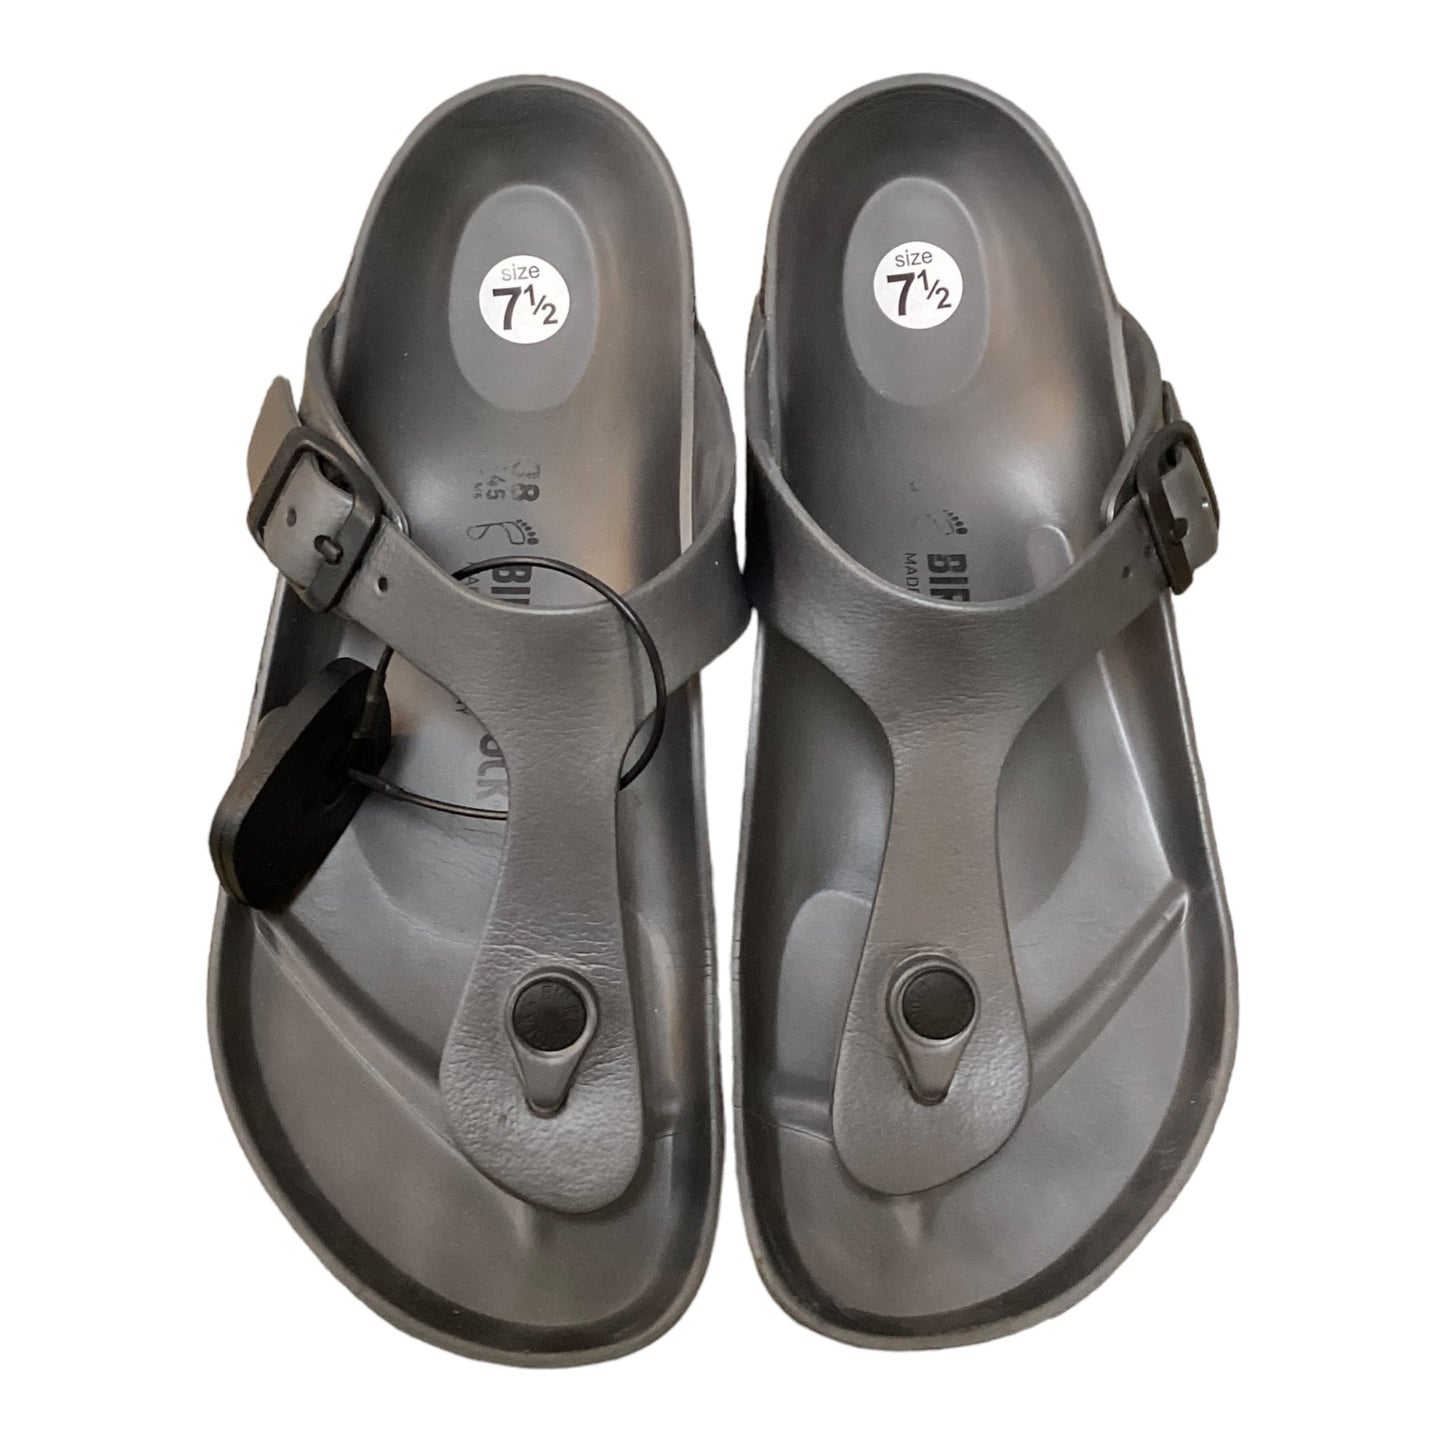 Grey Sandals Flats Birkenstock, Size 7.5